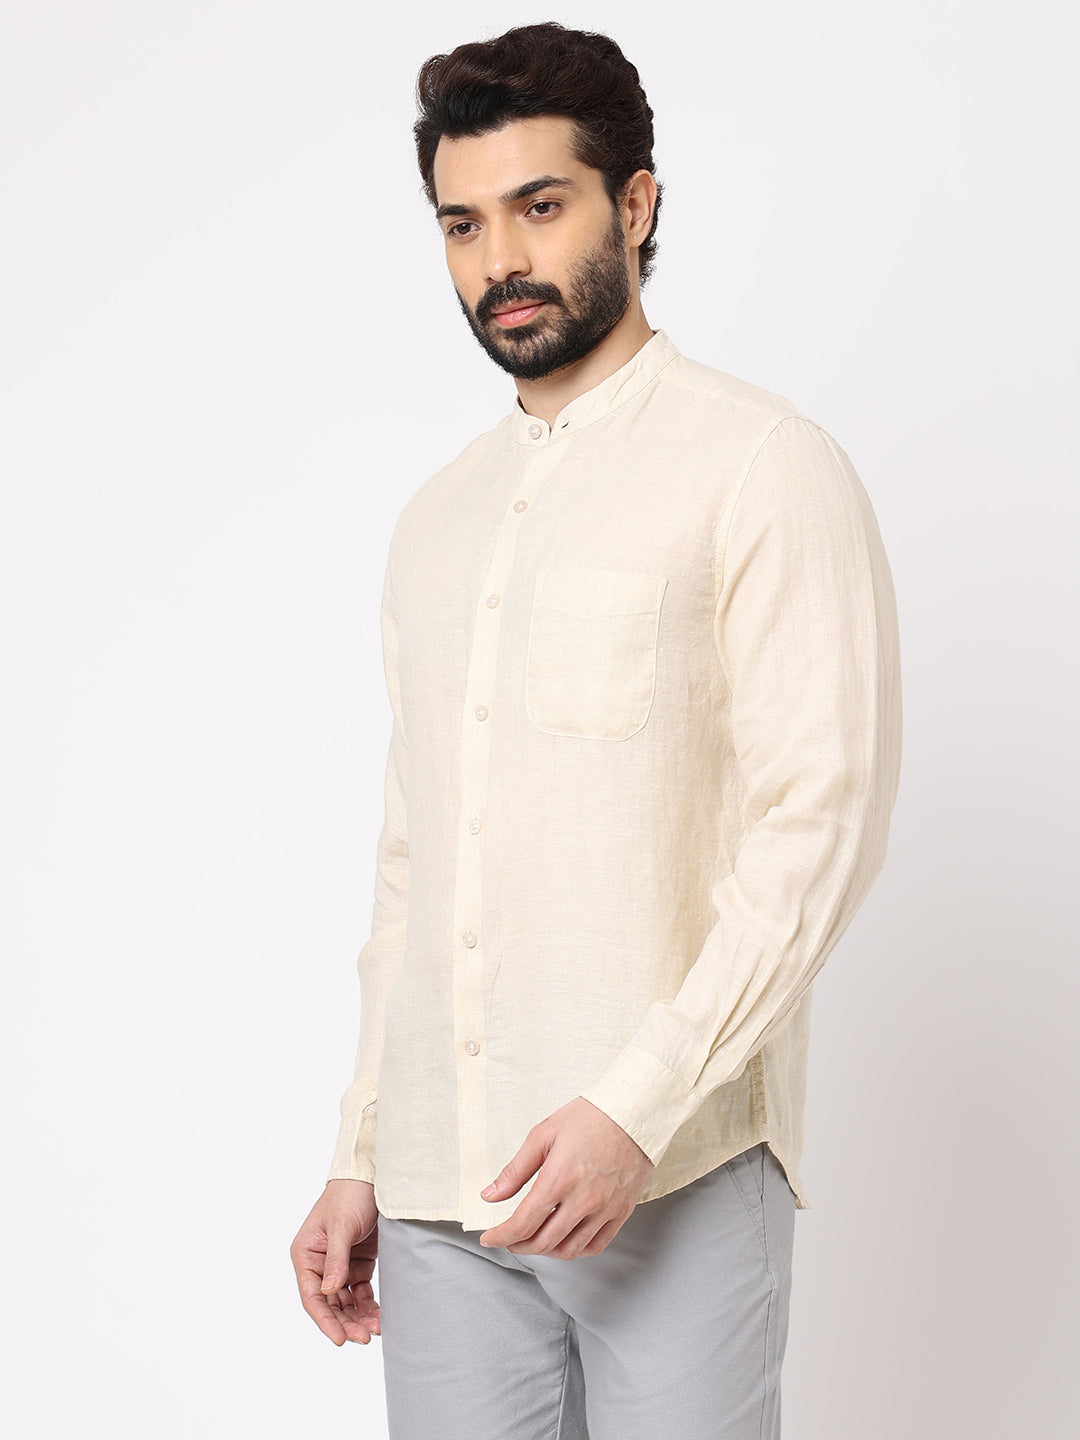 Men's Natural 100% Linen Long Sleeve Band Collar Regular Fit Shirt